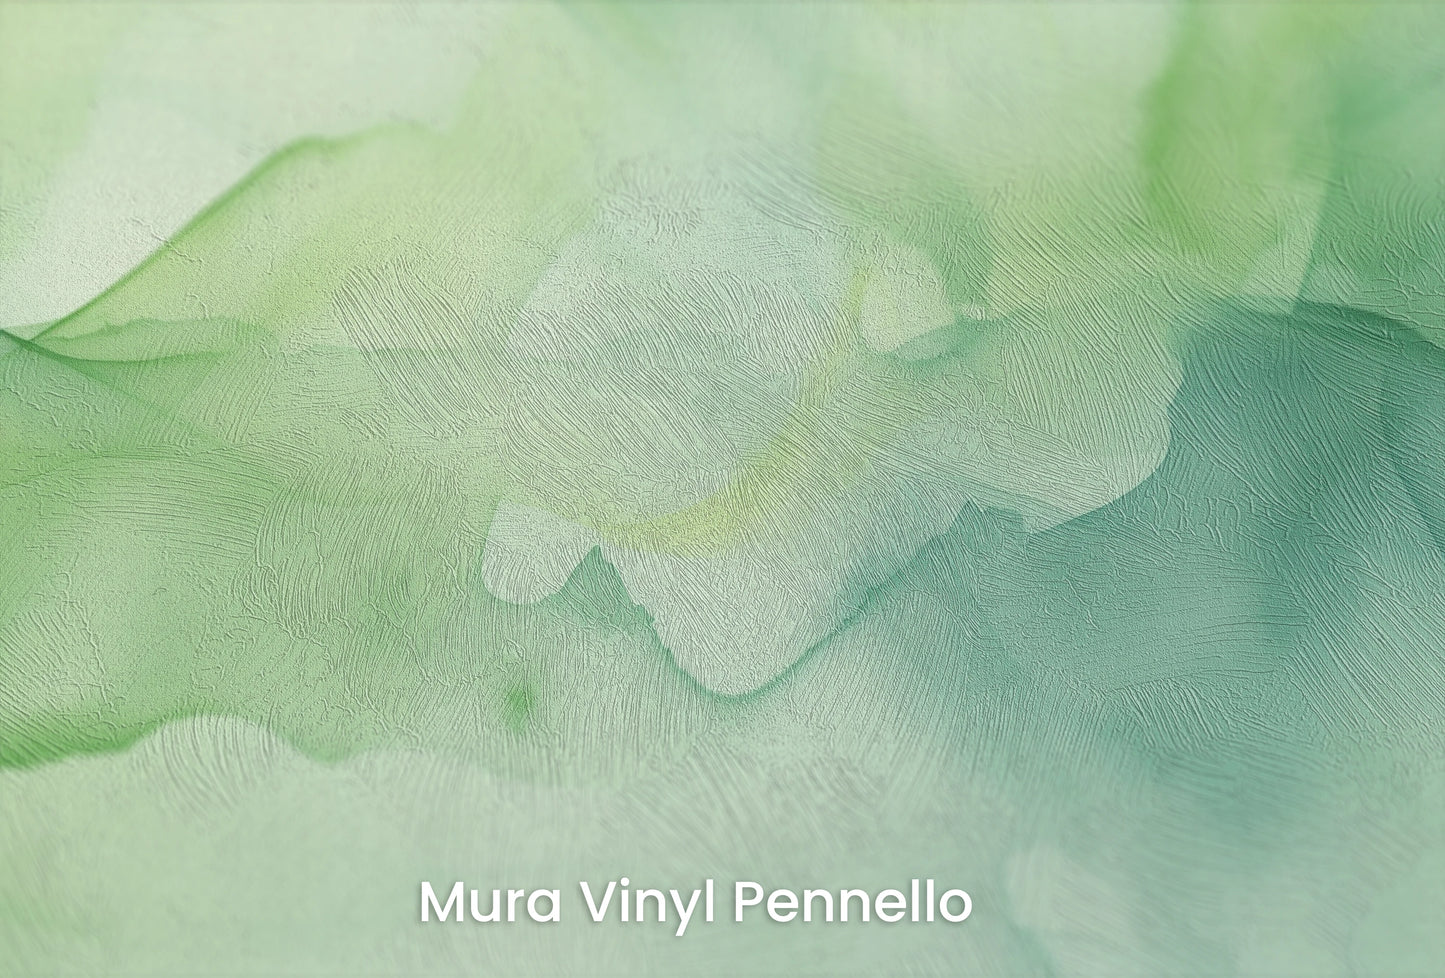 Zbliżenie na artystyczną fototapetę o nazwie Eteryczna Zieleń na podłożu Mura Vinyl Pennello - faktura pociągnięć pędzla malarskiego.